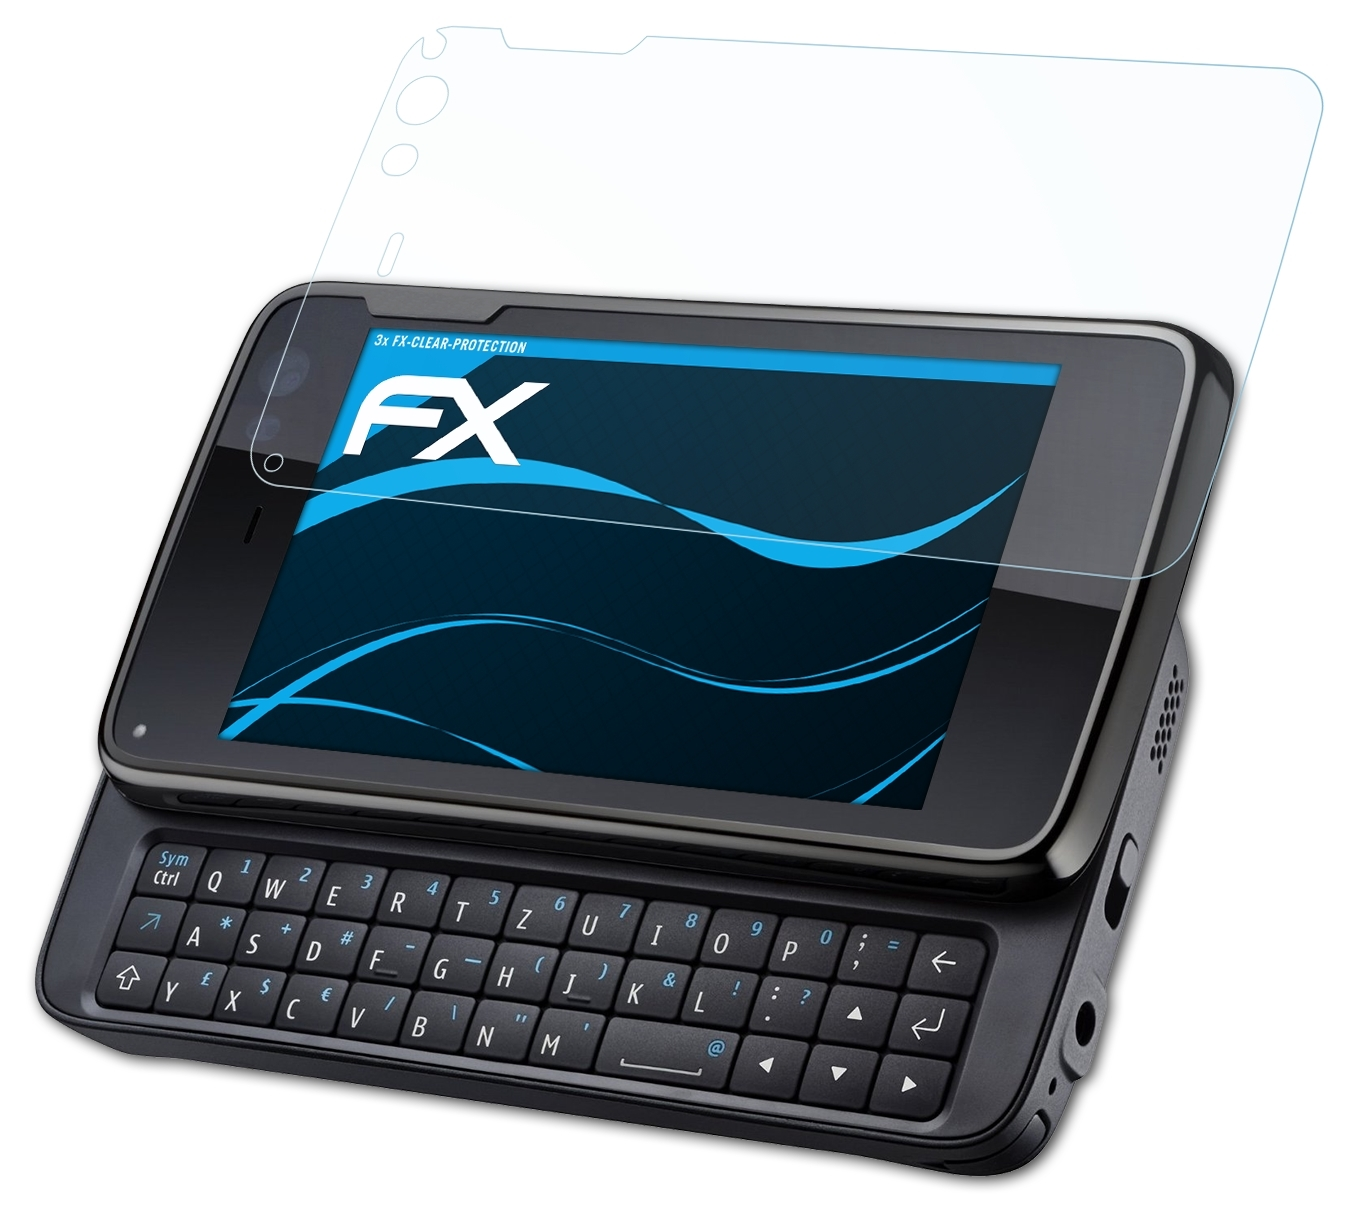 N900) ATFOLIX 3x Nokia FX-Clear Displayschutz(für